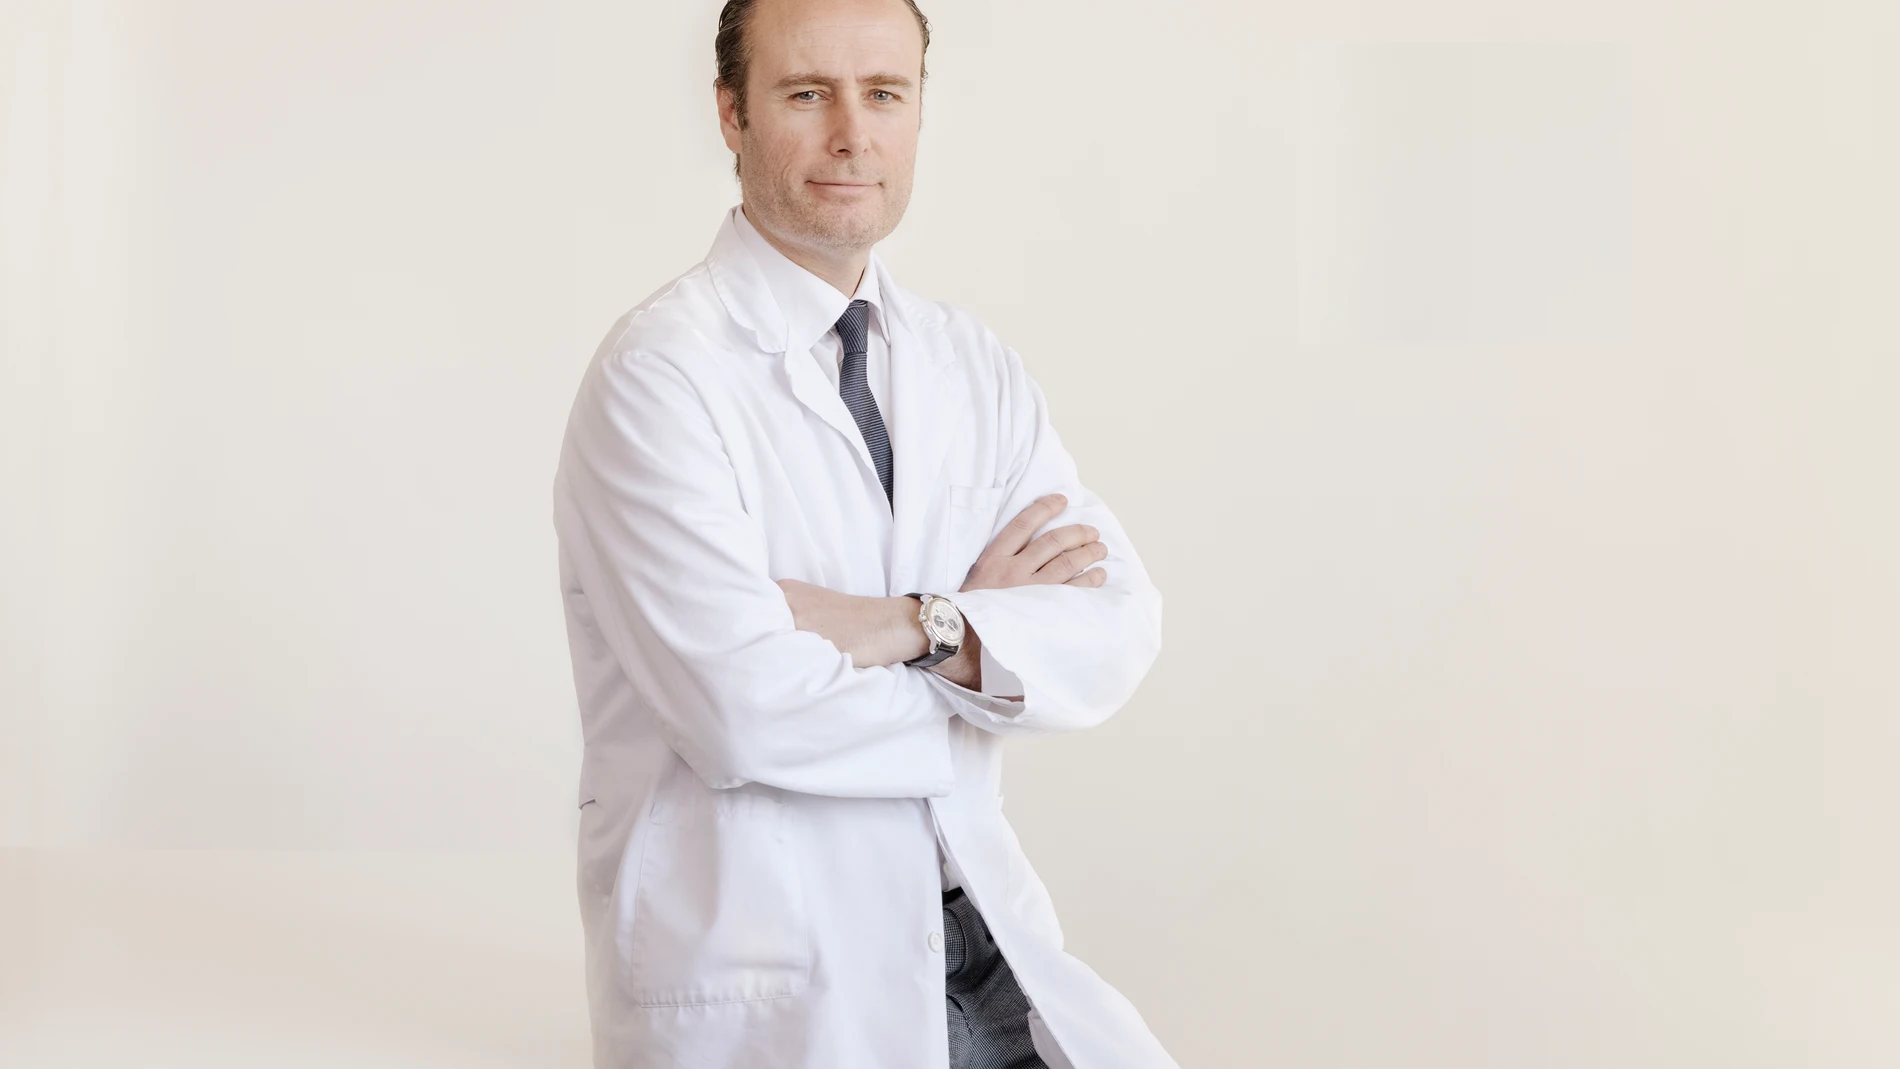 Dr. Pablo Clavel, director del Instituto Clavel del Hospital Quirónsalud Barcelona/ Gunnar Knechtel Photography